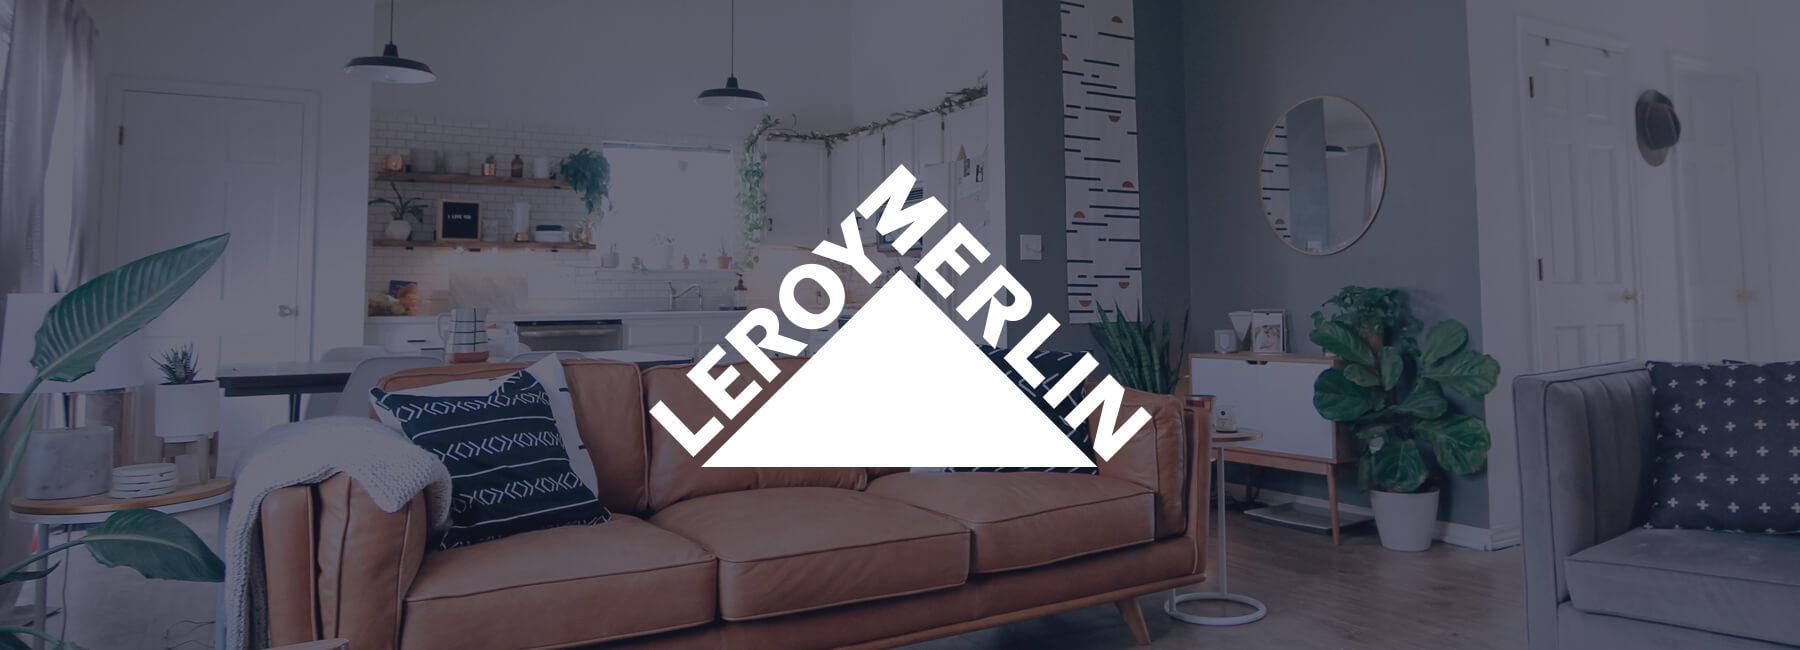 Leroy Merlin améliore son taux de conversion grâce à l’outil Mopinion